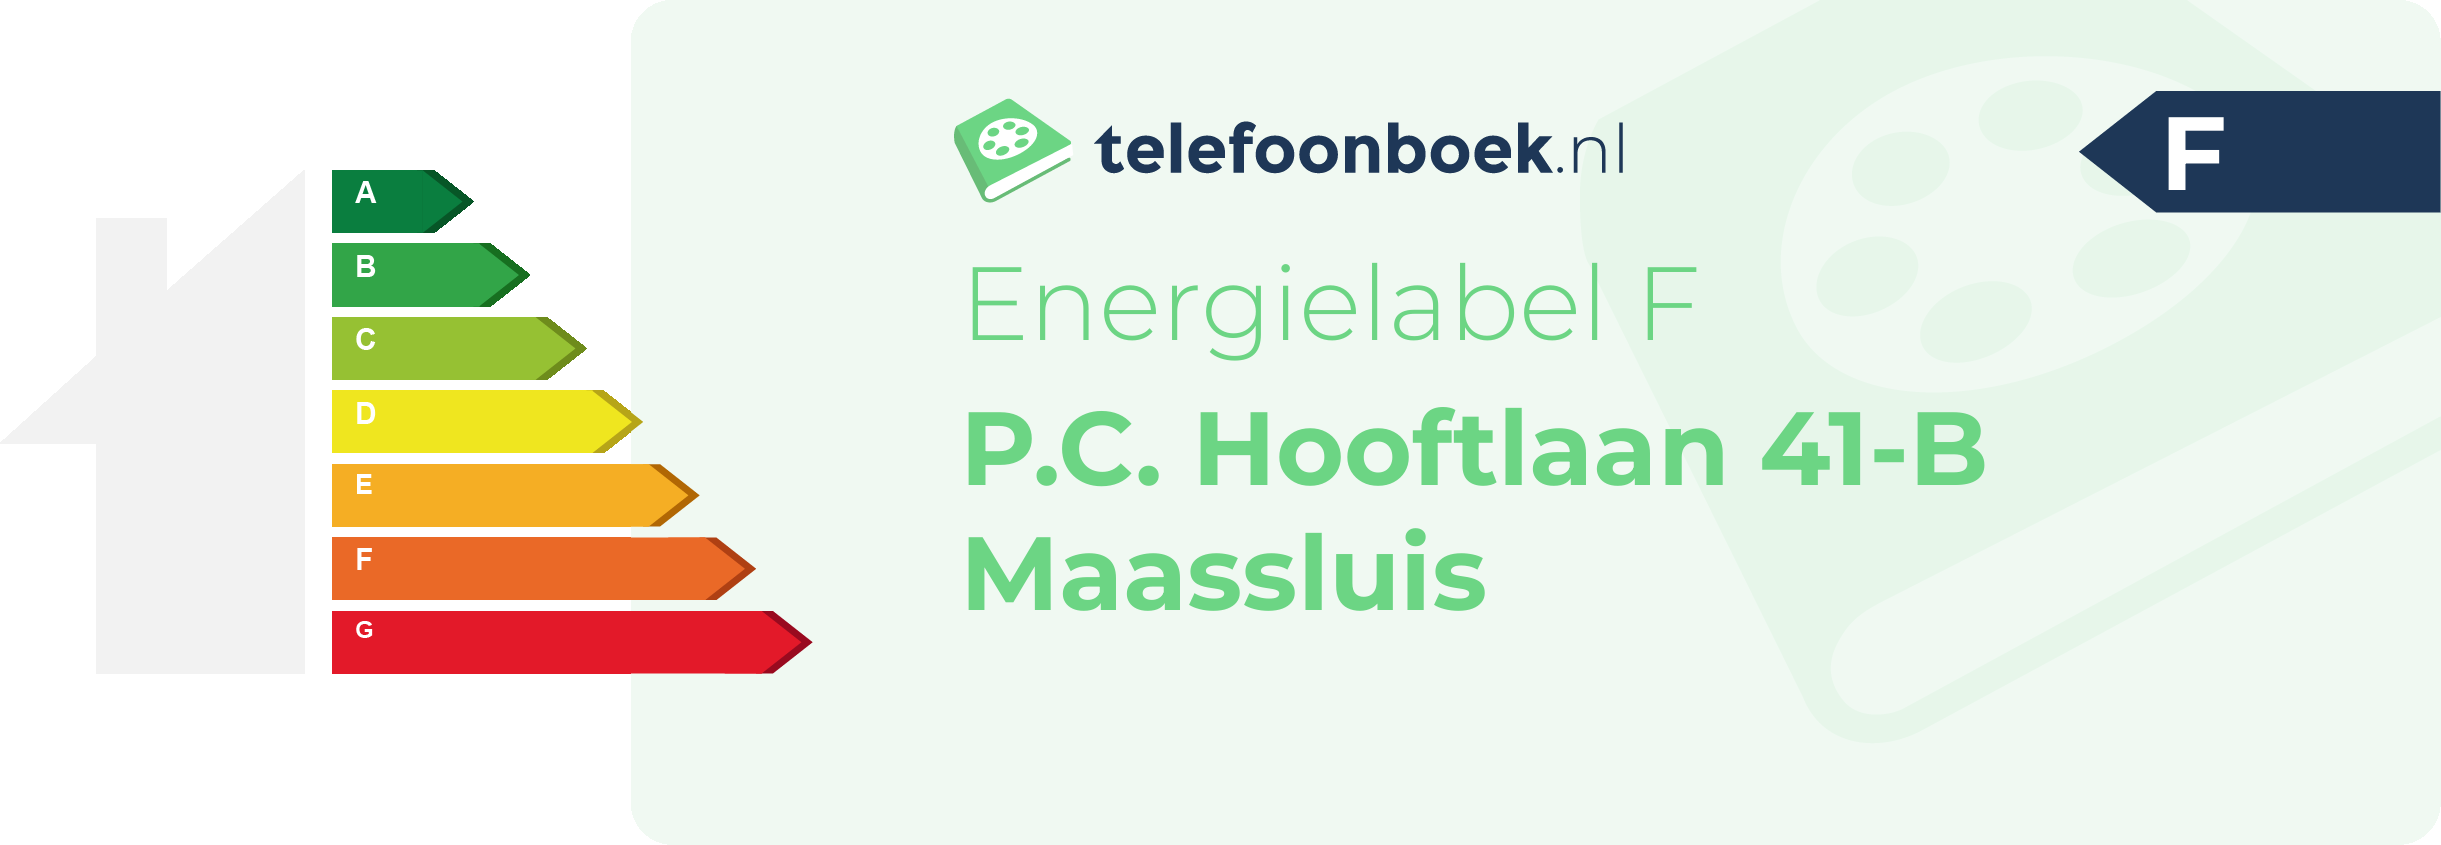 Energielabel P.C. Hooftlaan 41-B Maassluis